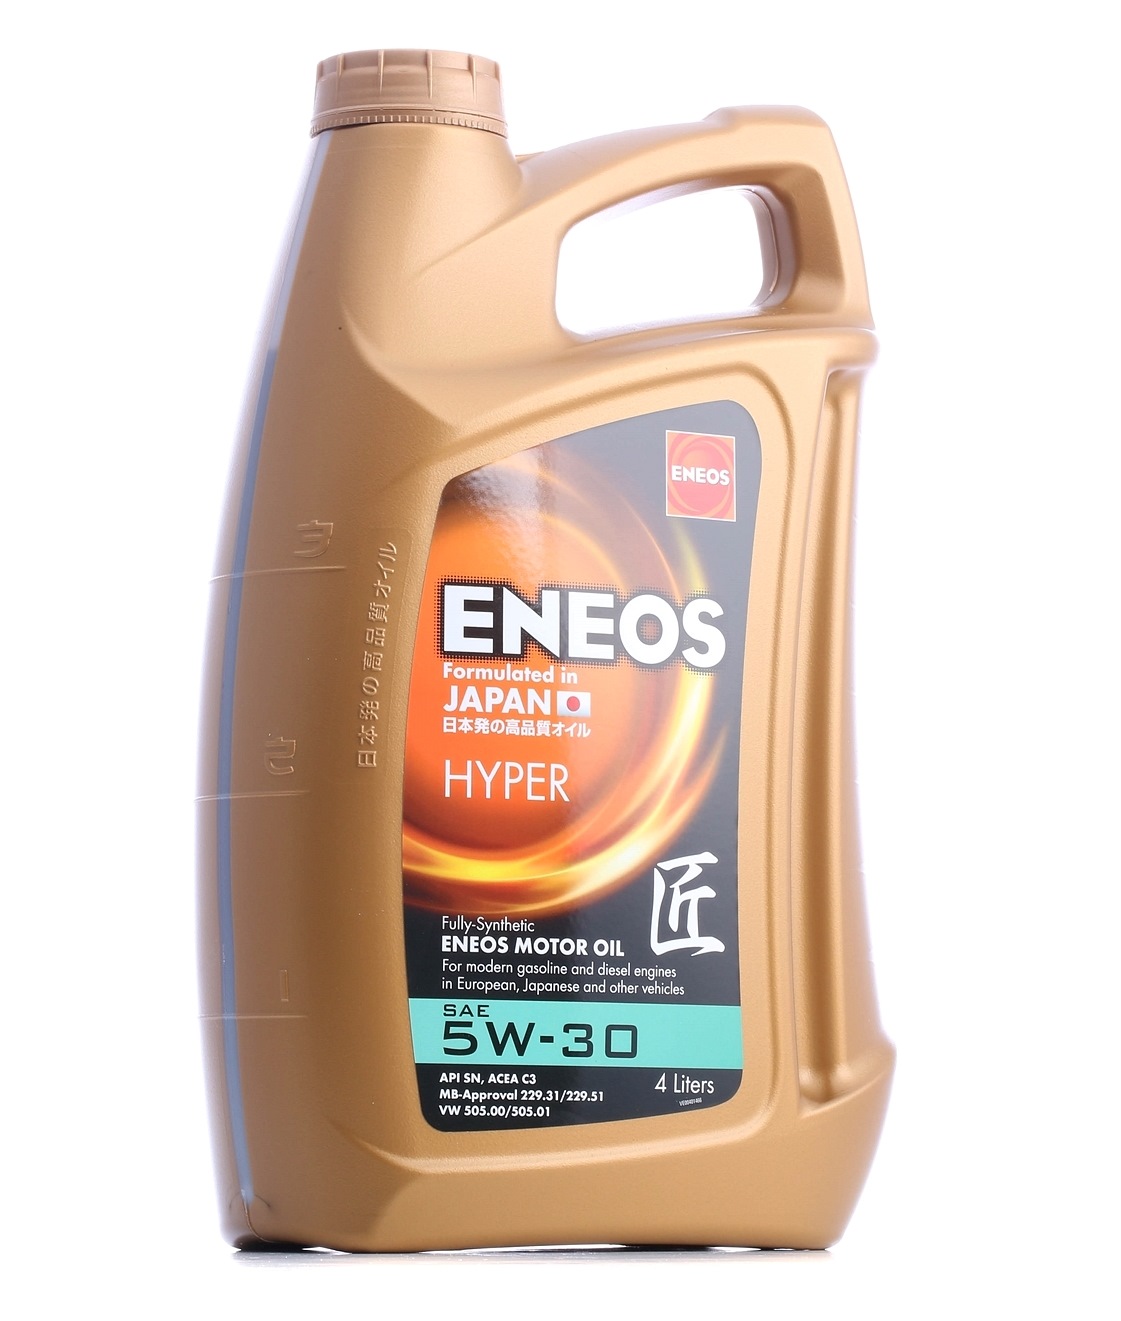 Kaufen KFZ Motoröl ENEOS 63580690 Premium, Hyper 5W-30, 4l, Synthetiköl